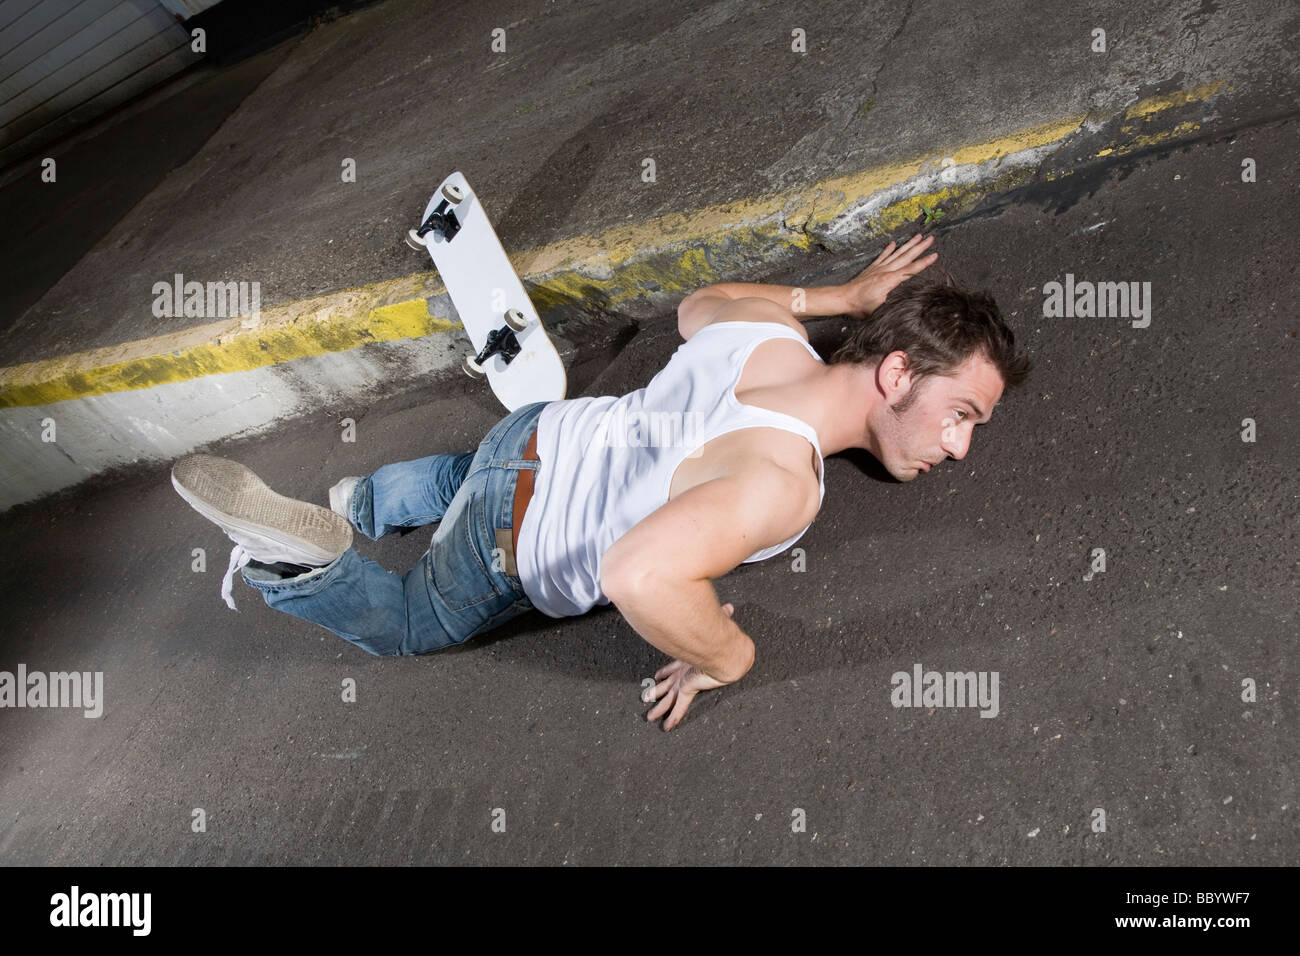 Skateboarder lying on asphalt in a weird position Stock Photo